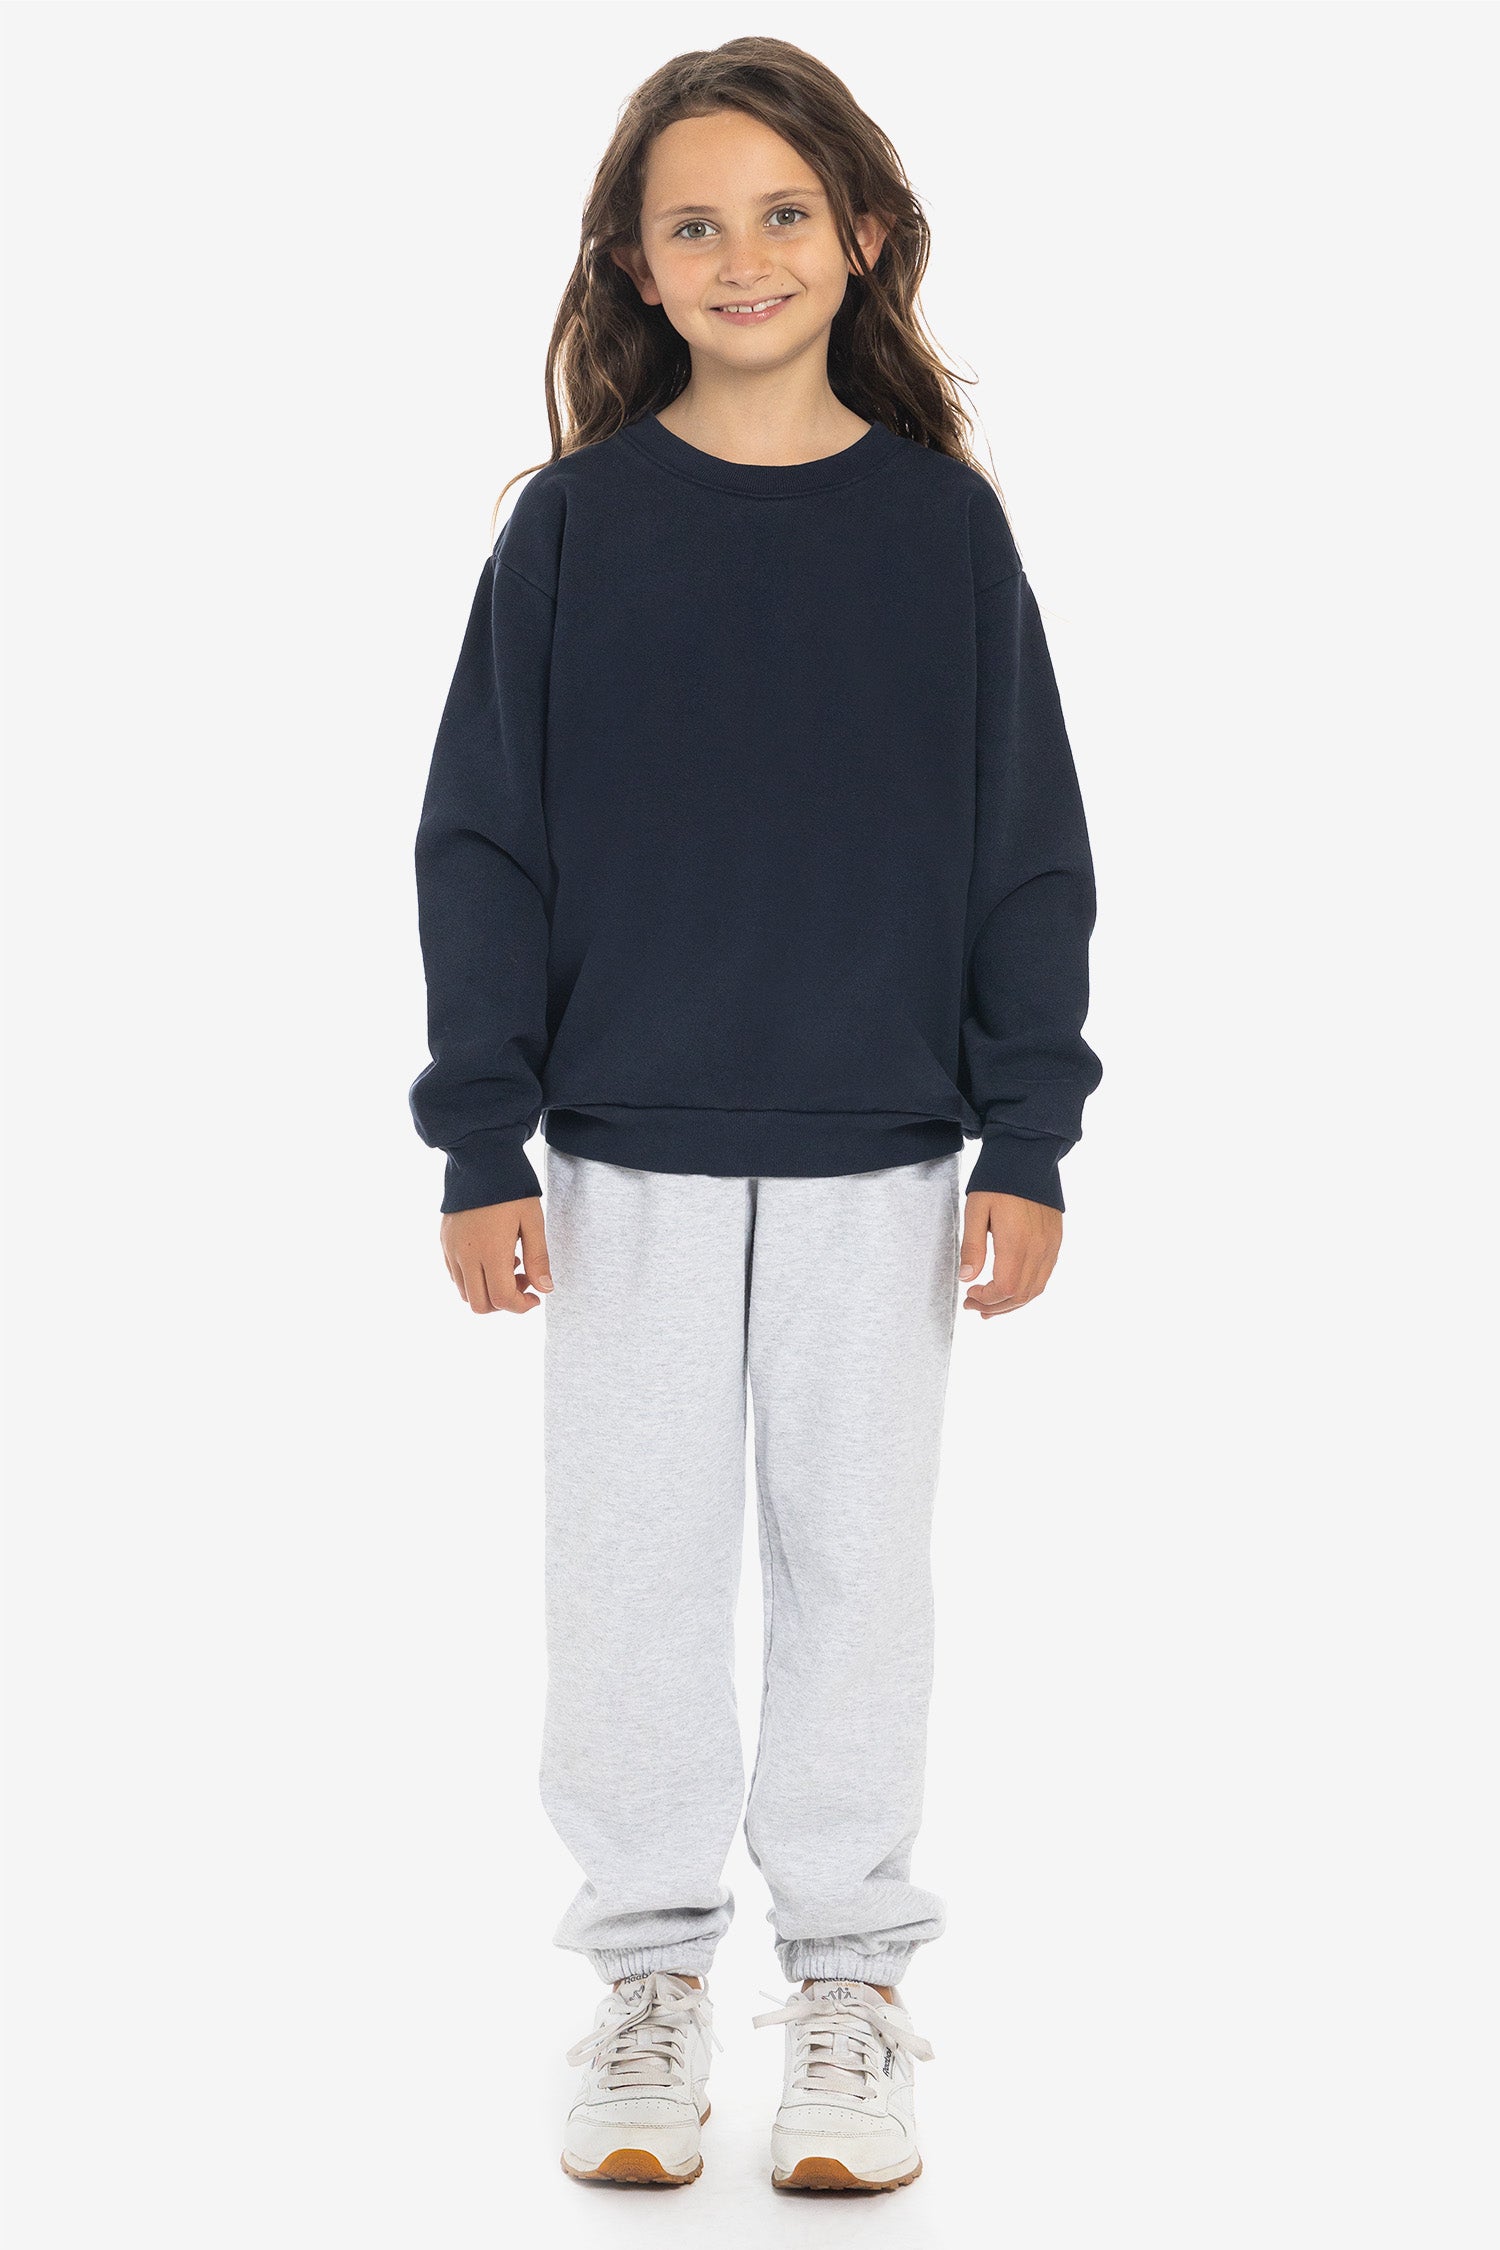 HF107GD - Kids Heavy Fleece Sweatshirt Garment – Crew Angeles Los Dye Apparel